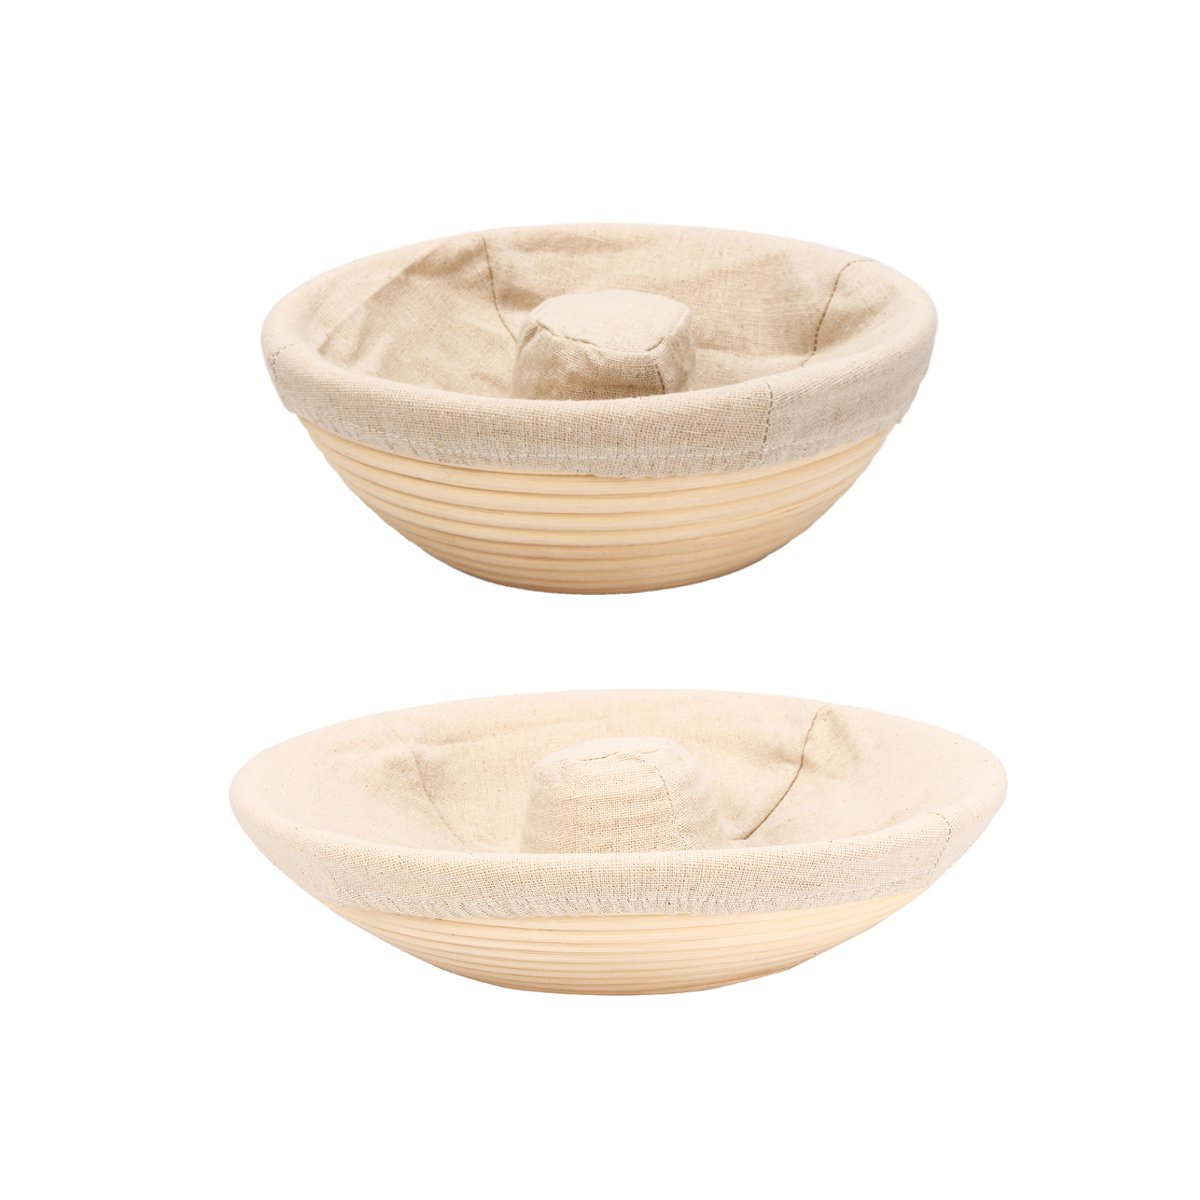 Handmade-Round-Oval-Banneton-Bortform-Rattan-Storage-Baskets-Bread-Dough-Proofing-Liner-1383037-4